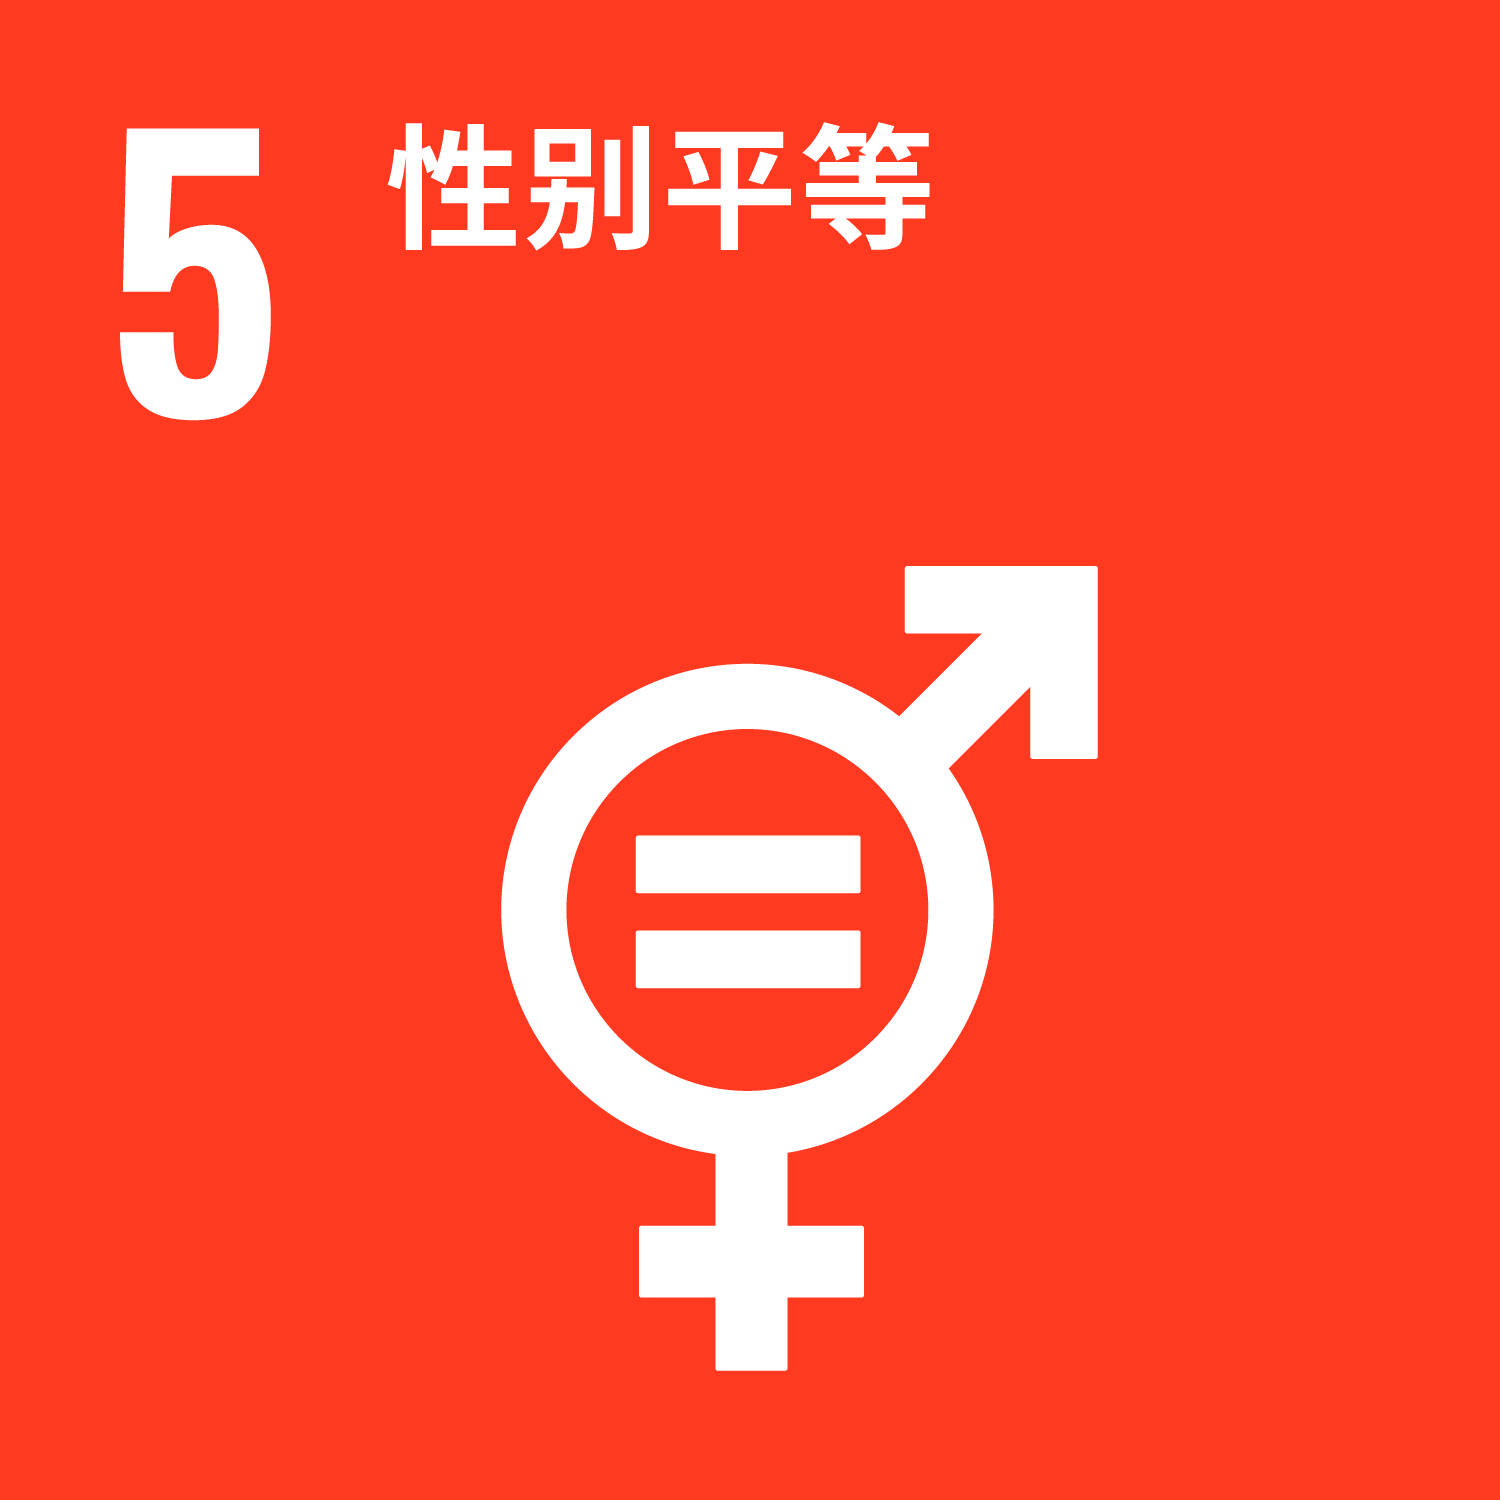 No.5 实现性别平等，增强所有妇女和女童的权能